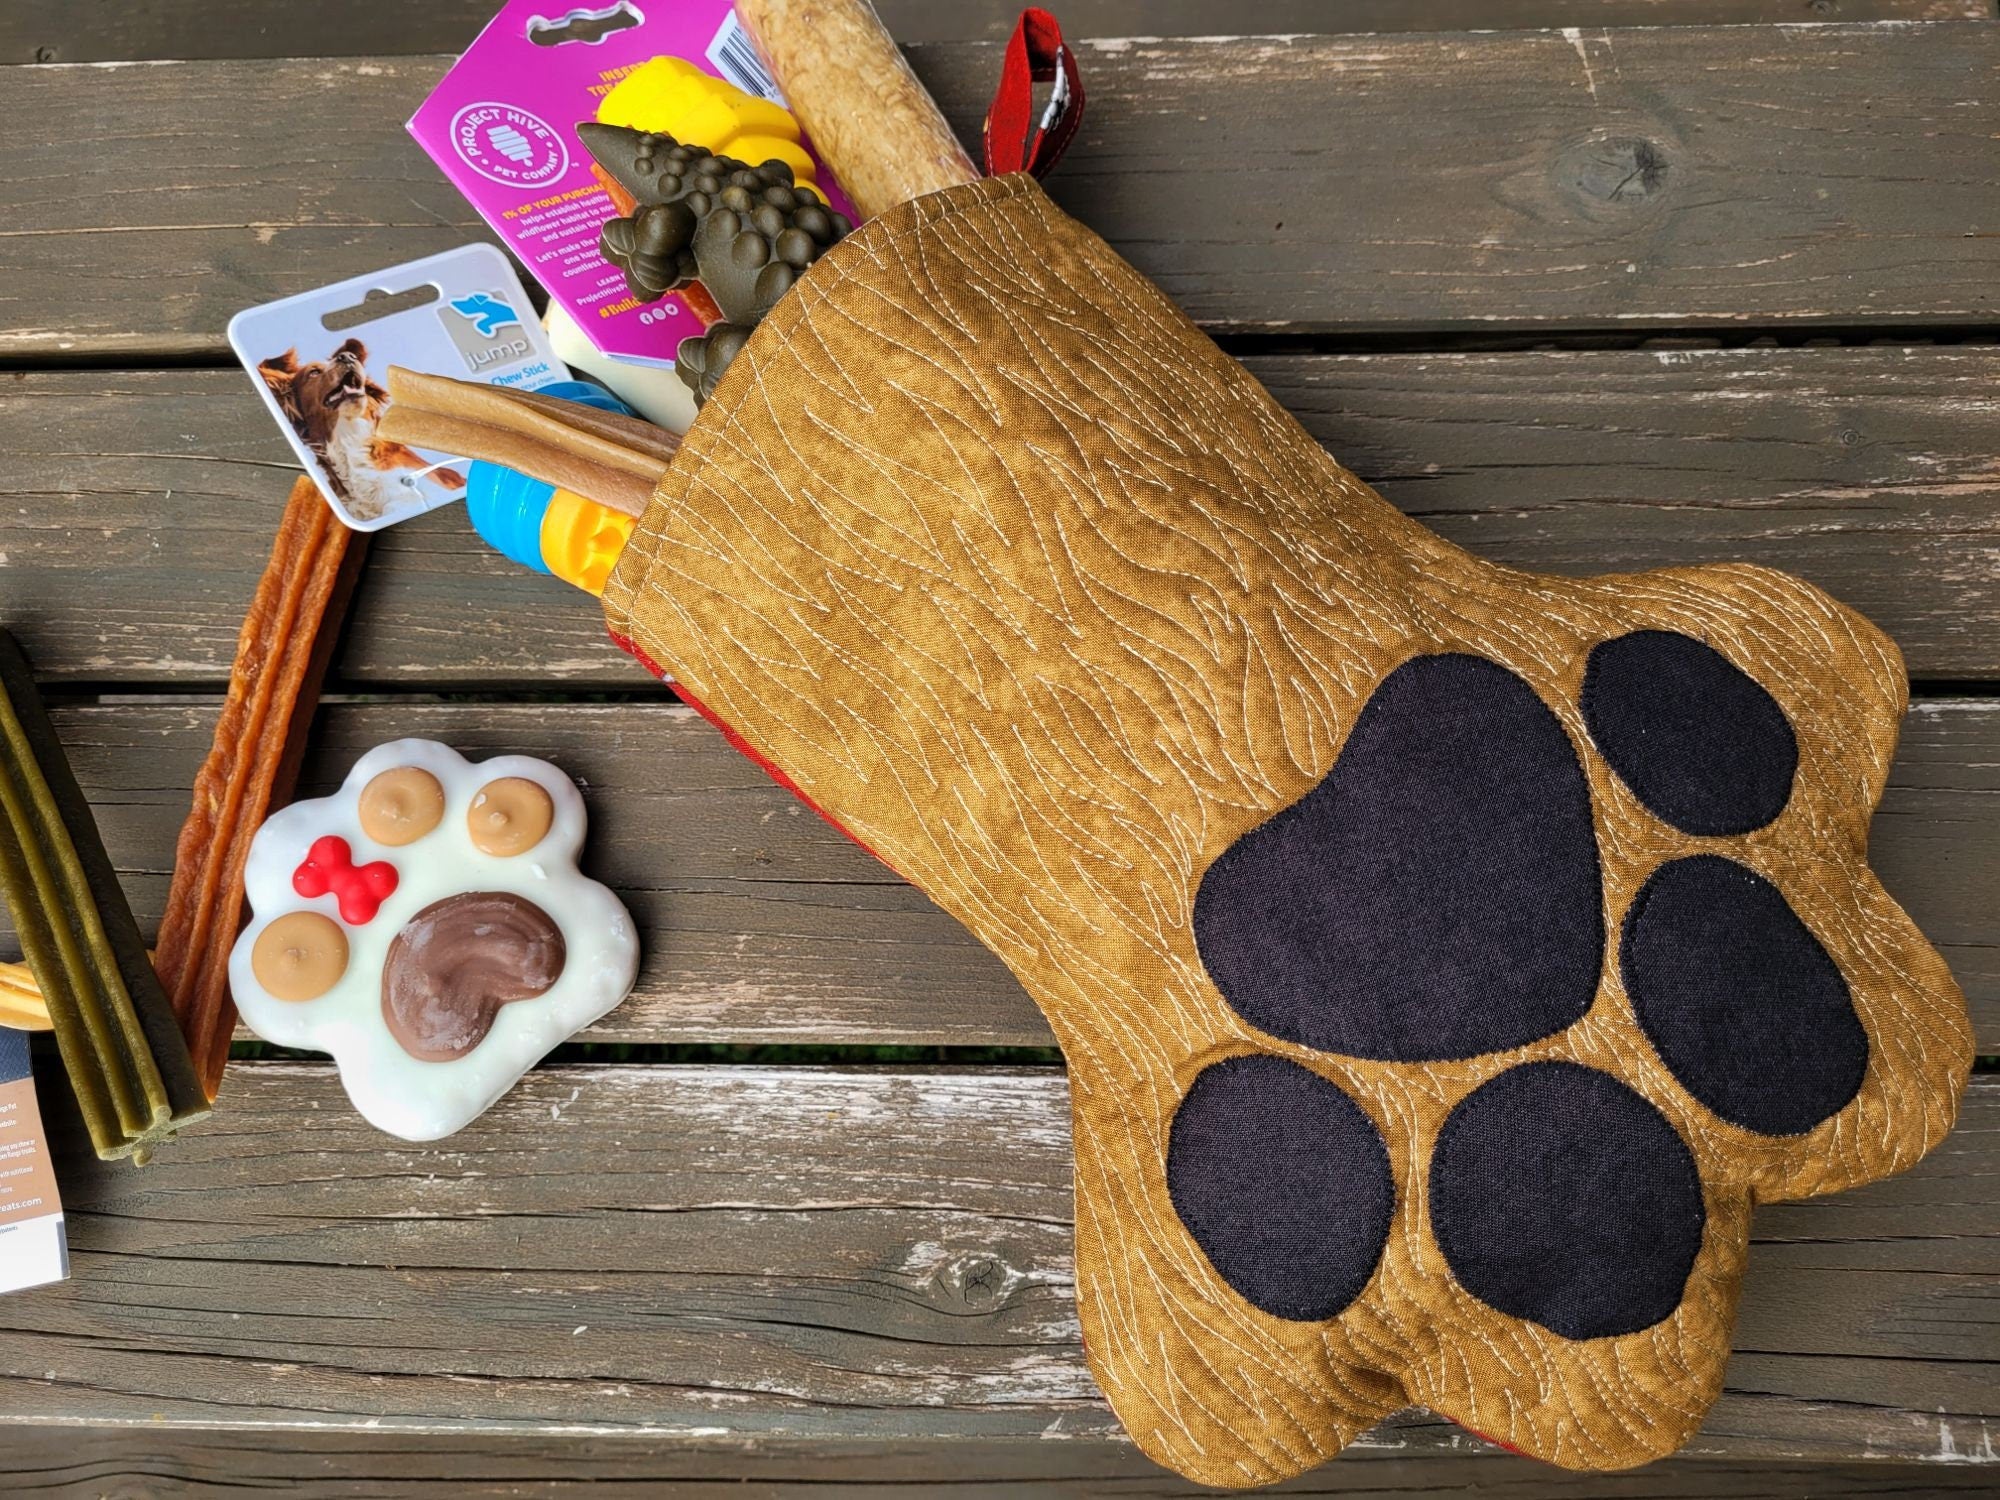 Pet Paw Stocking, Dog or Cat Gift